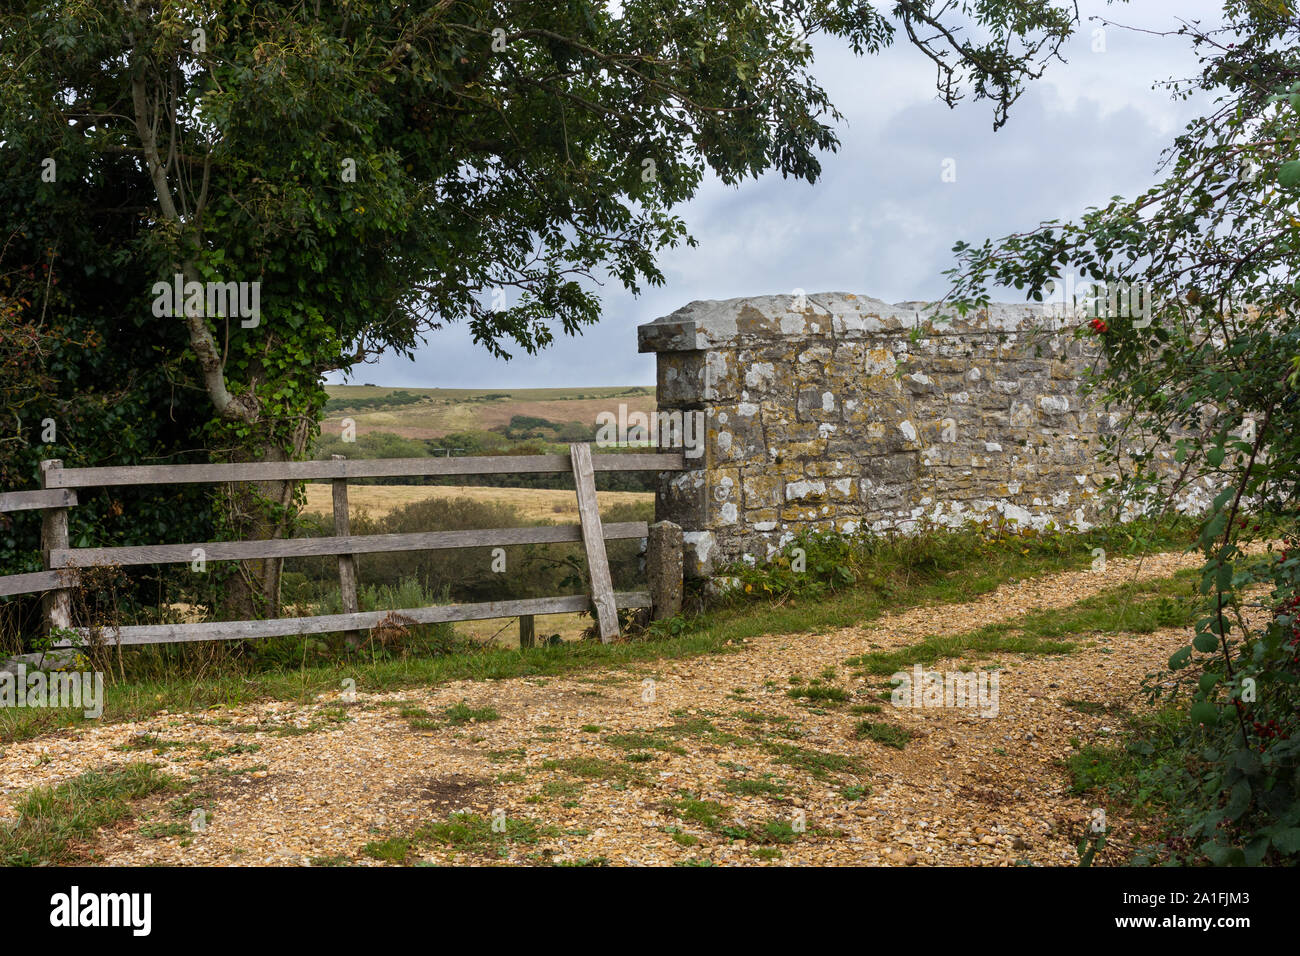 Ländliche Szene einer Brücke aus Stein an der Wand und Holz Zaun entlang einer ruhigen Pathway in Dorset, Großbritannien Stockfoto